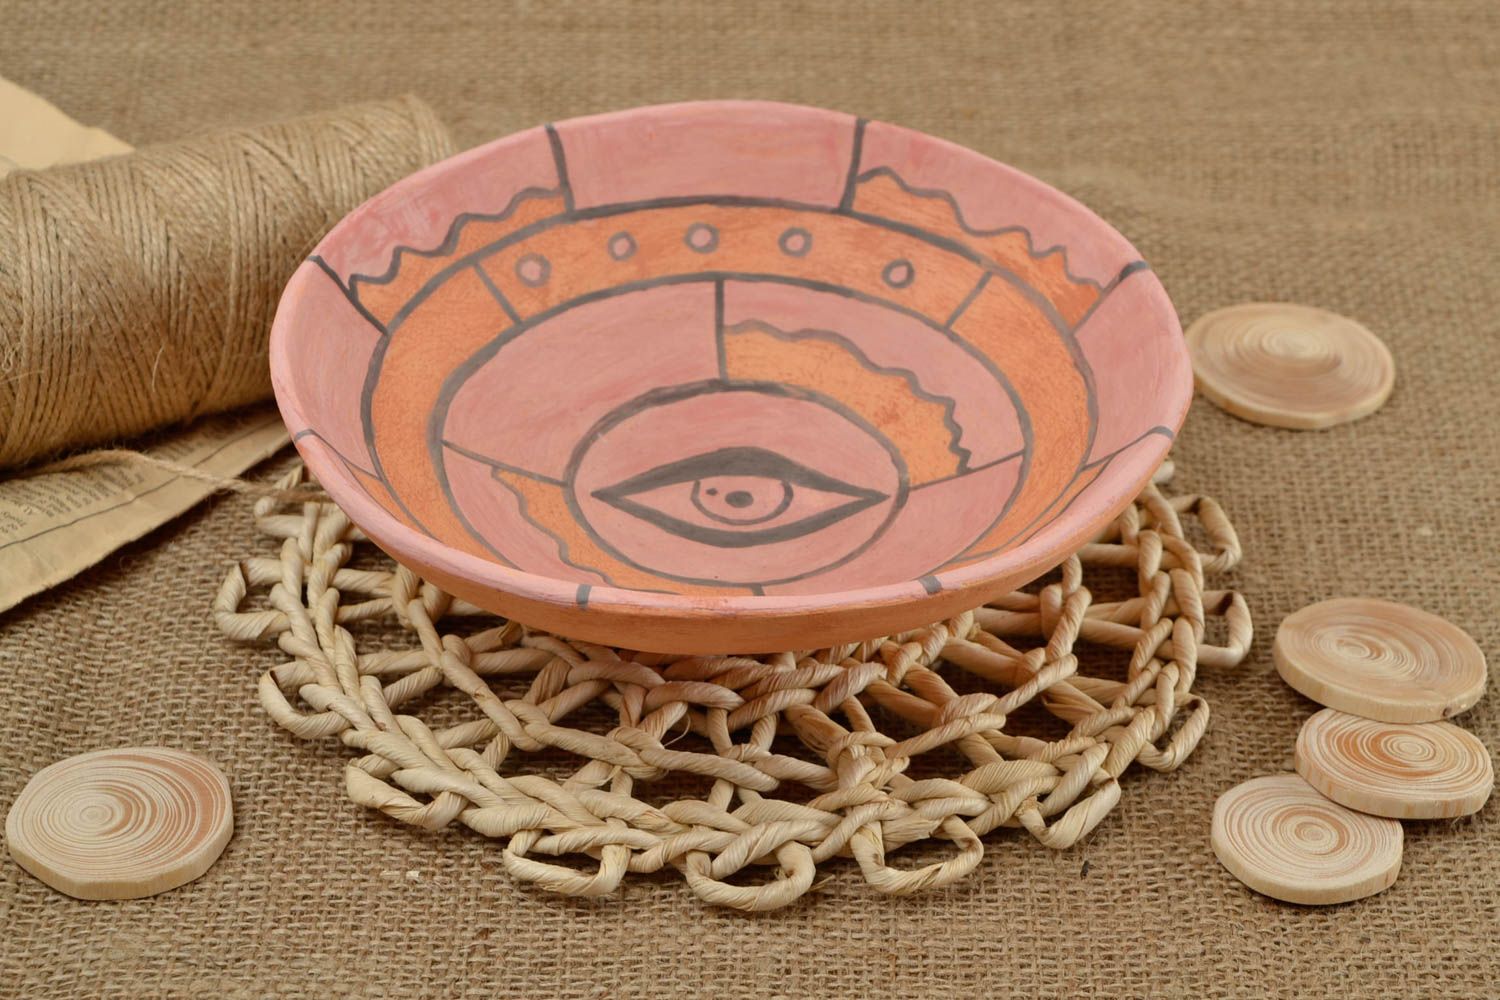 Керамическая тарелка ручной работы глиняная посуда расписная тарелка Глаз фото 1